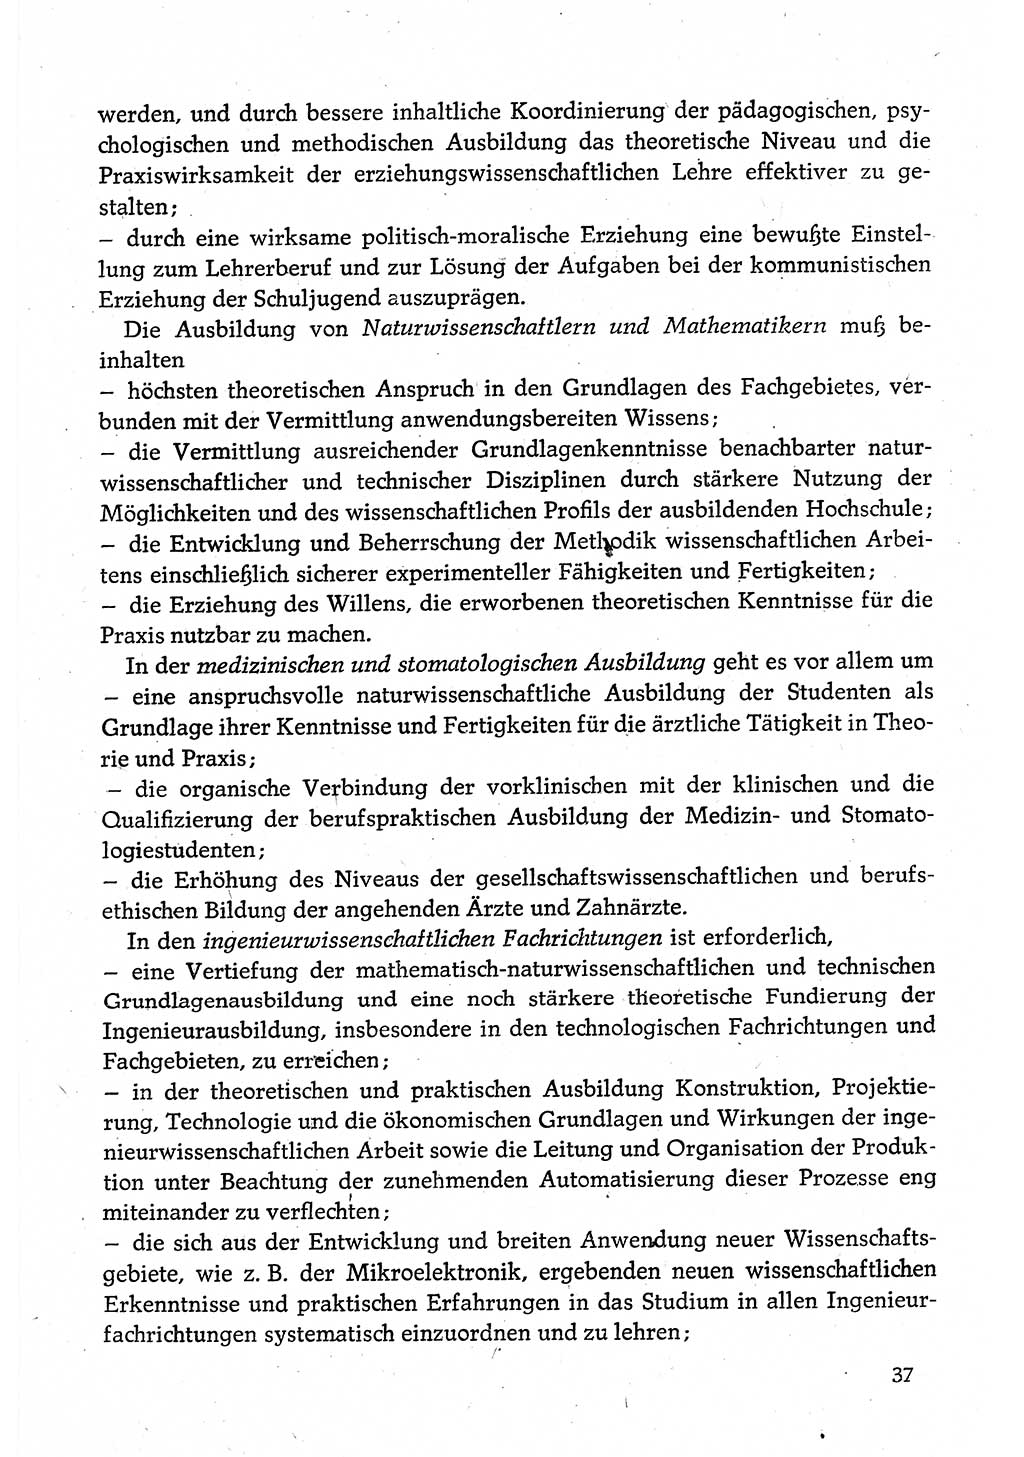 Dokumente der Sozialistischen Einheitspartei Deutschlands (SED) [Deutsche Demokratische Republik (DDR)] 1980-1981, Seite 37 (Dok. SED DDR 1980-1981, S. 37)